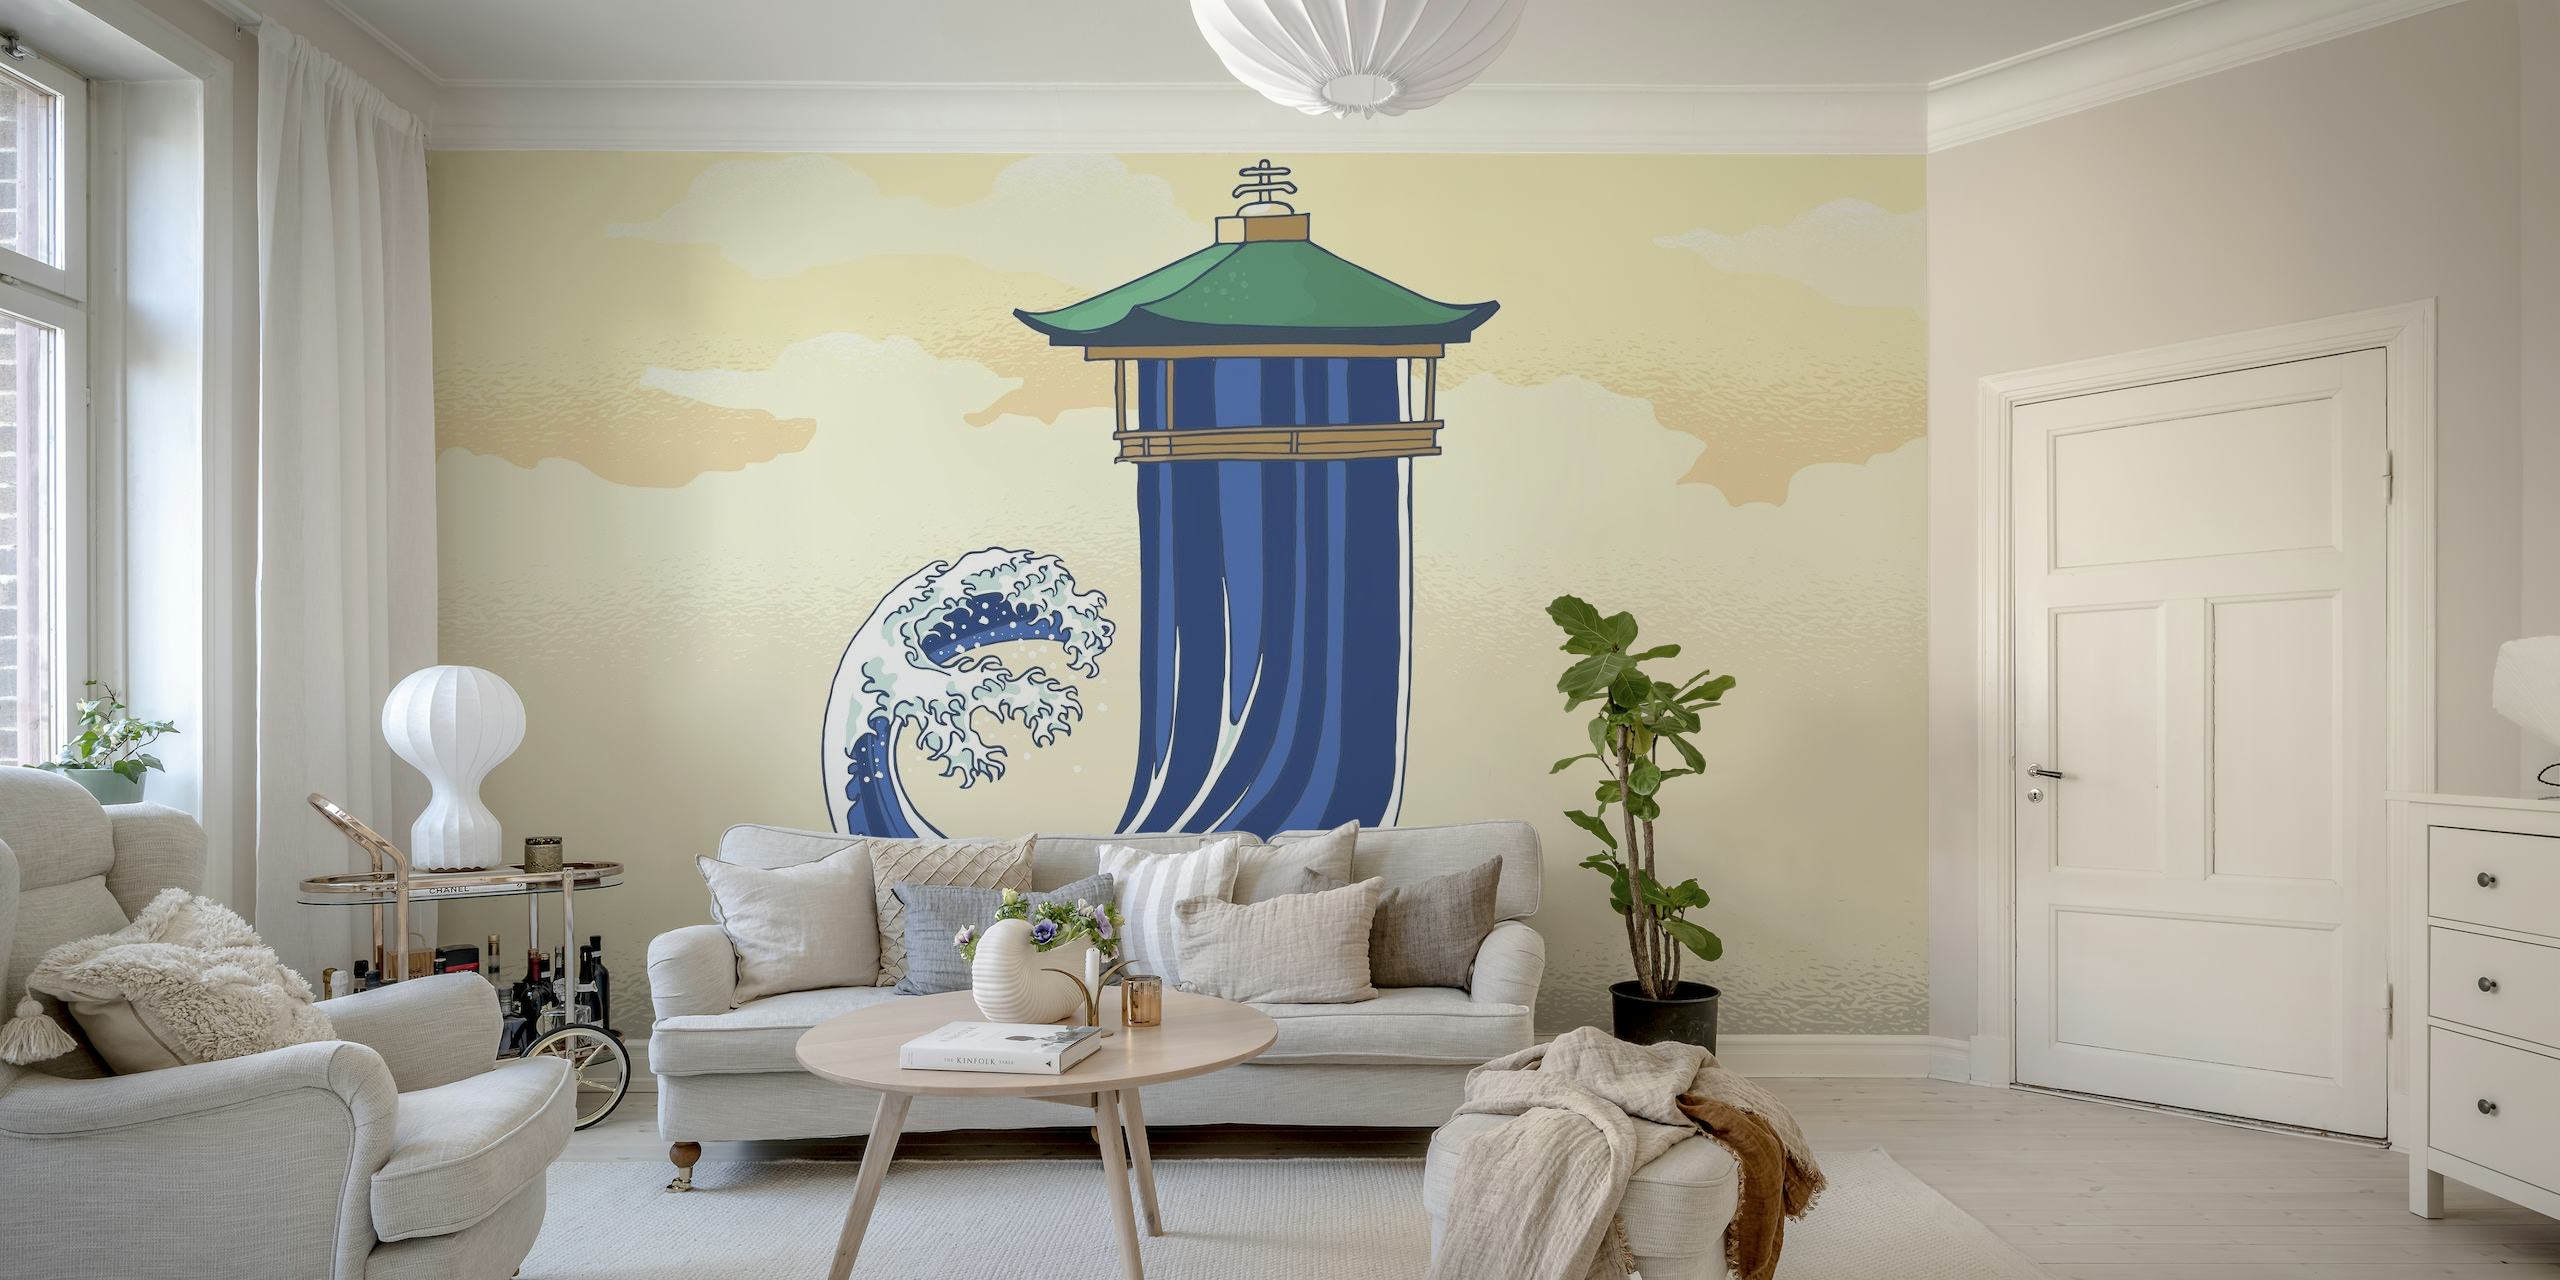 Pagoda japonesa estilizada y mural de olas oceánicas en colores pastel